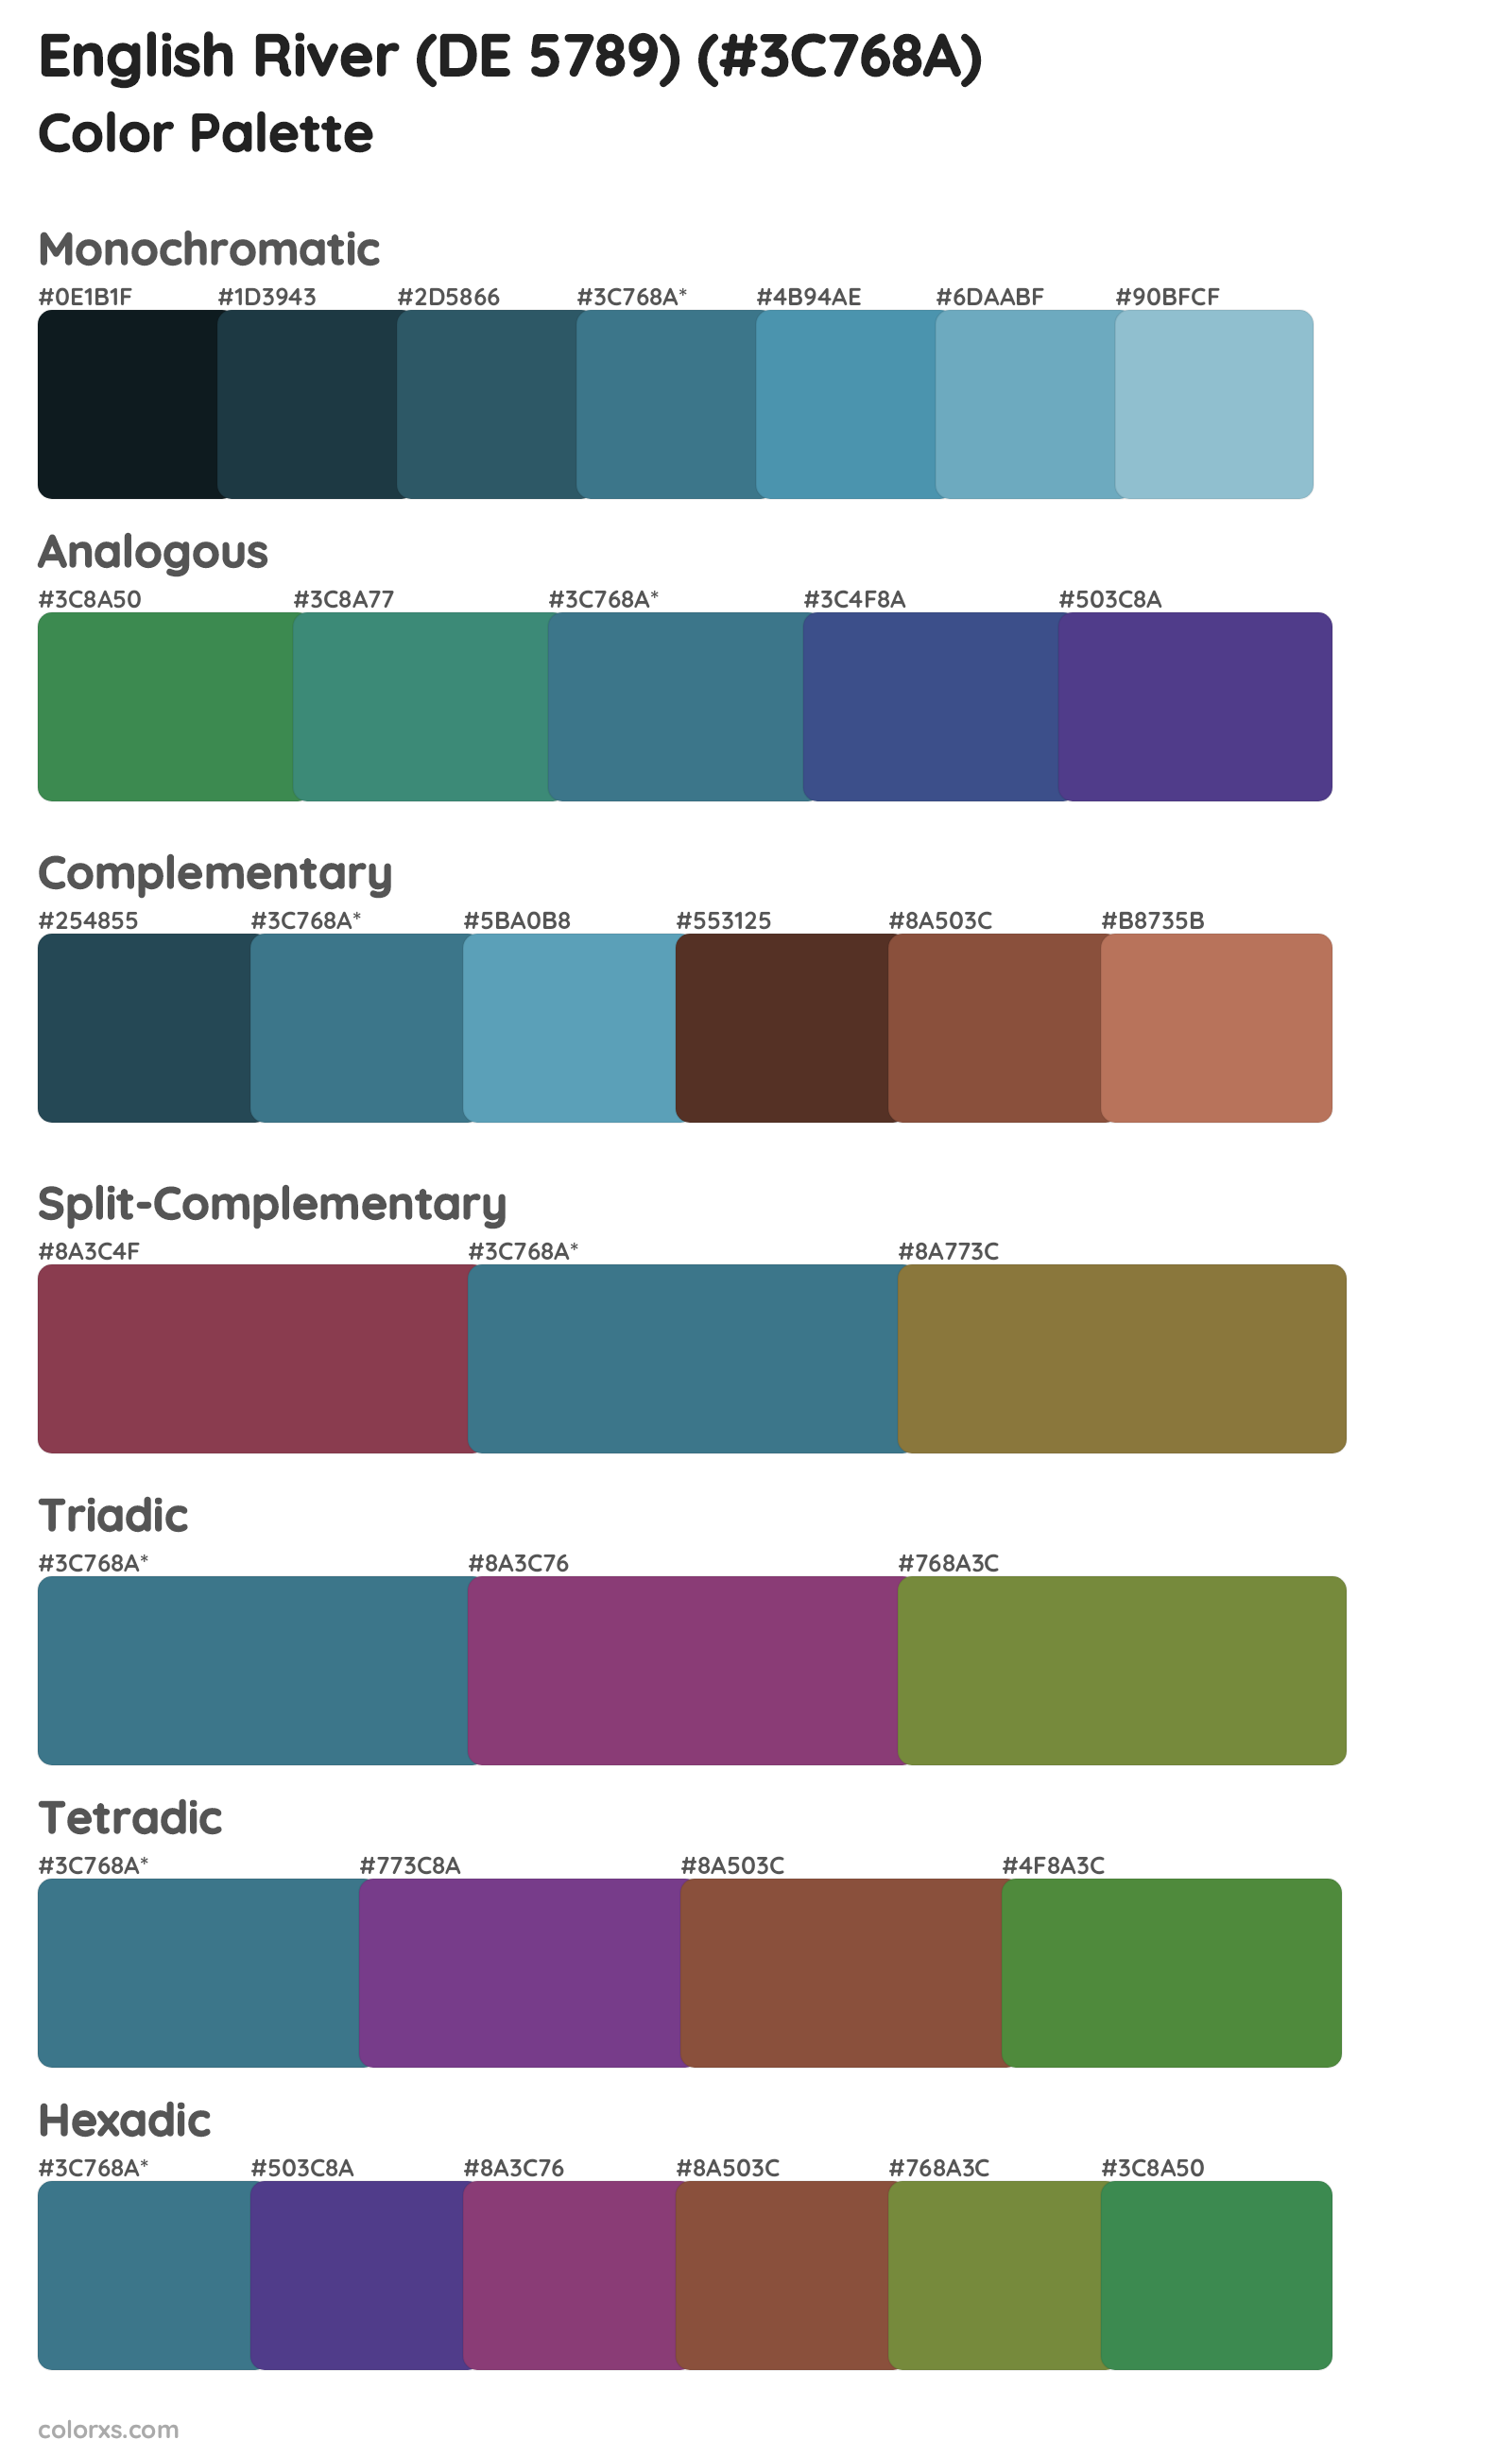 English River (DE 5789) Color Scheme Palettes